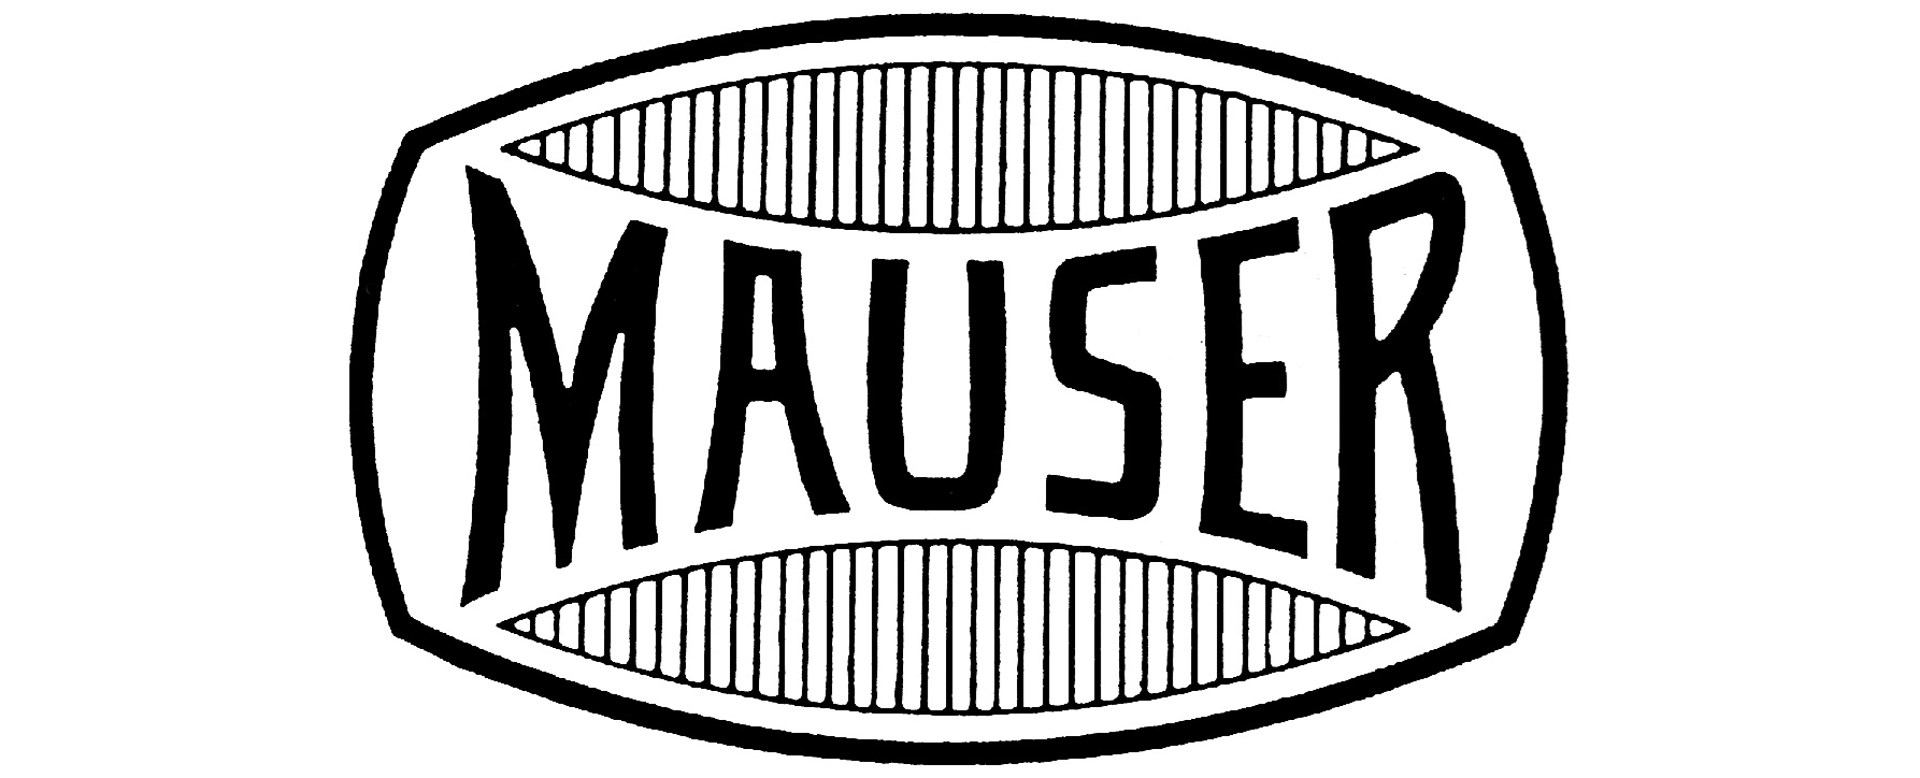 Mauser banner logo text black white lines font center